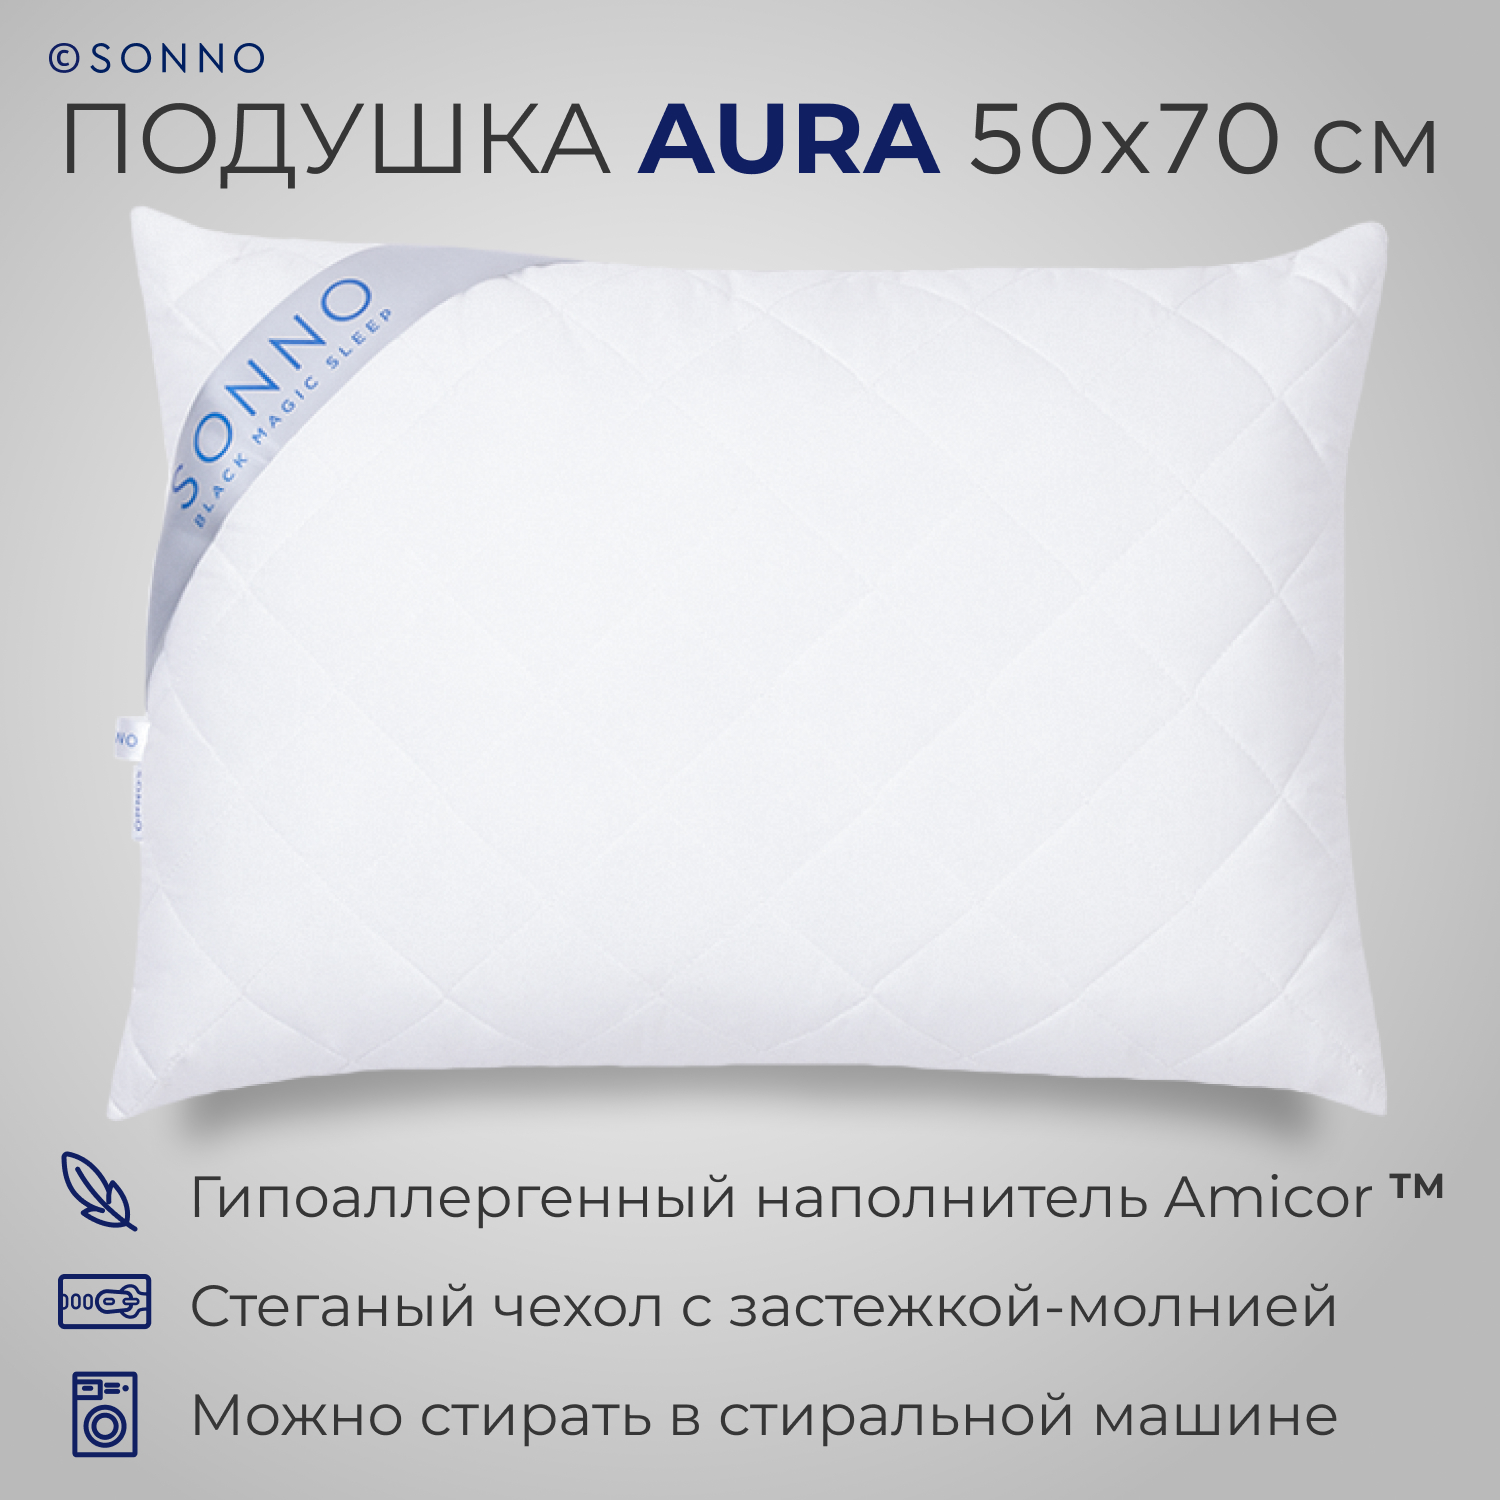 Подушка SONNO AURA 50x70 гипоаллергенный наполнитель Amicor TM ослепительно белый